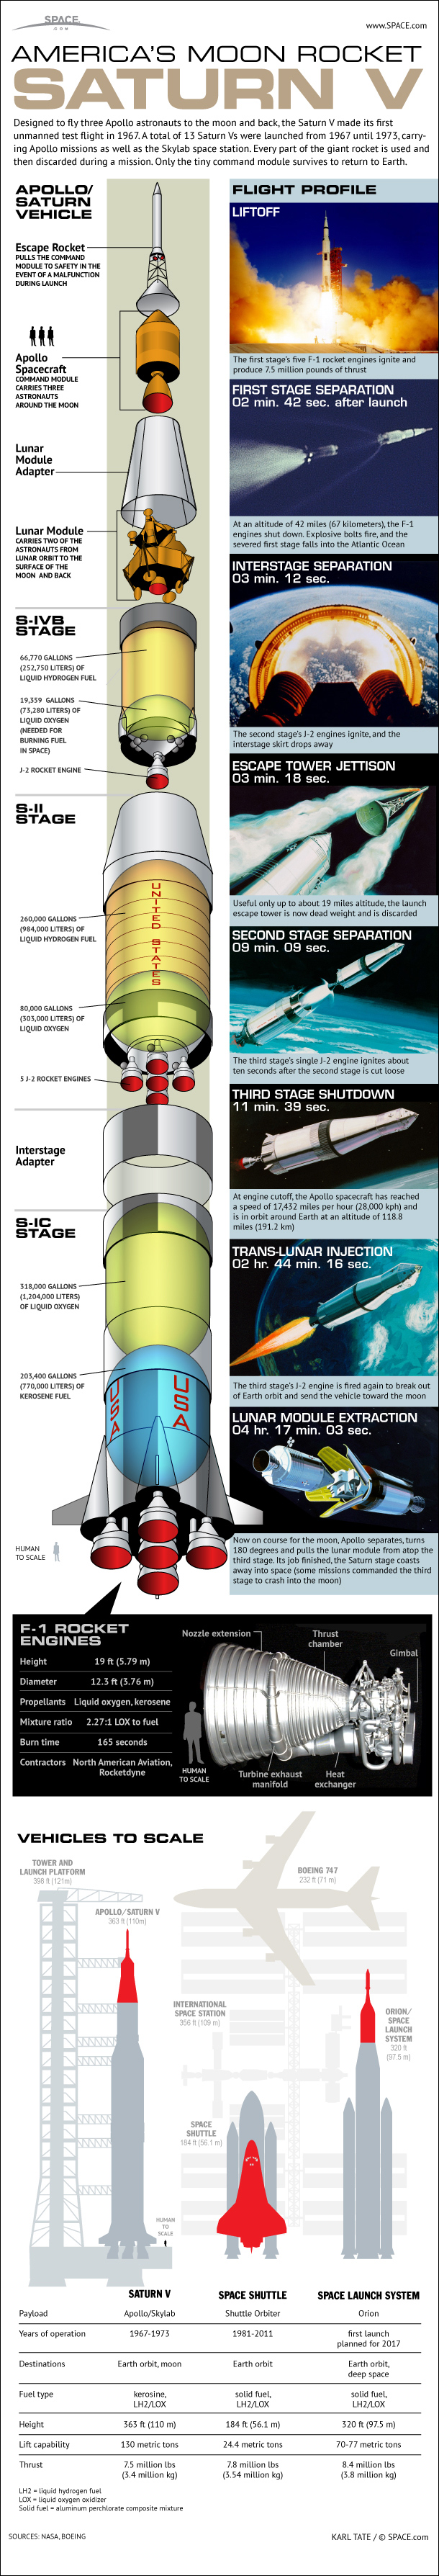 saturn-v-moon-rocket-45th-anniversary-121112a-02.jpg